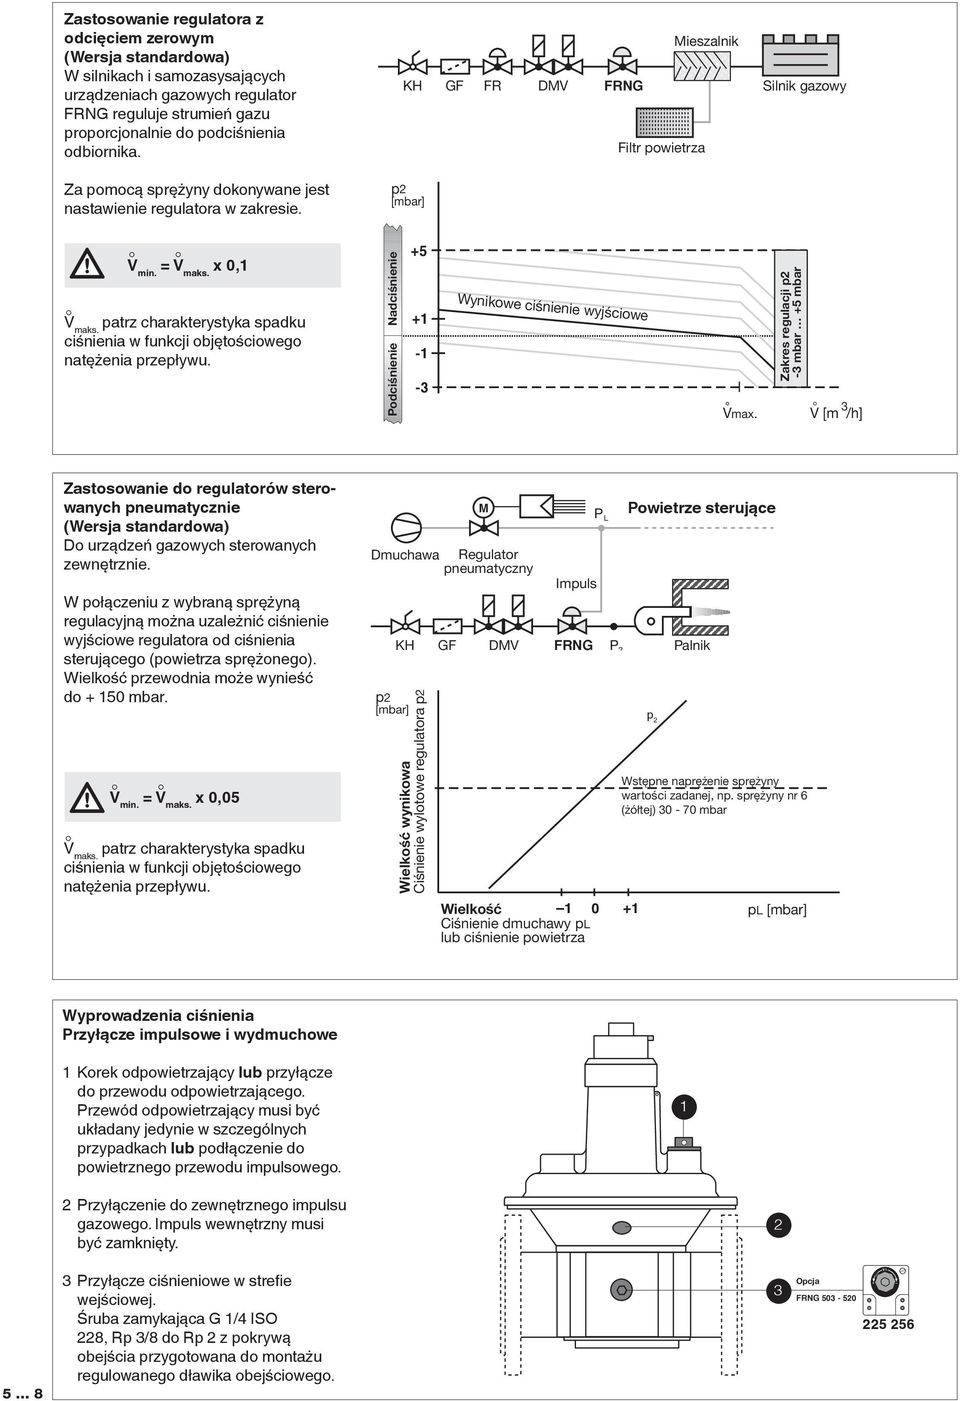 Zastosowanie do regulatorów sterowanych pneumatycznie (Wersja standardowa) Do urządzeń gazowych sterowanych zewnętrznie.